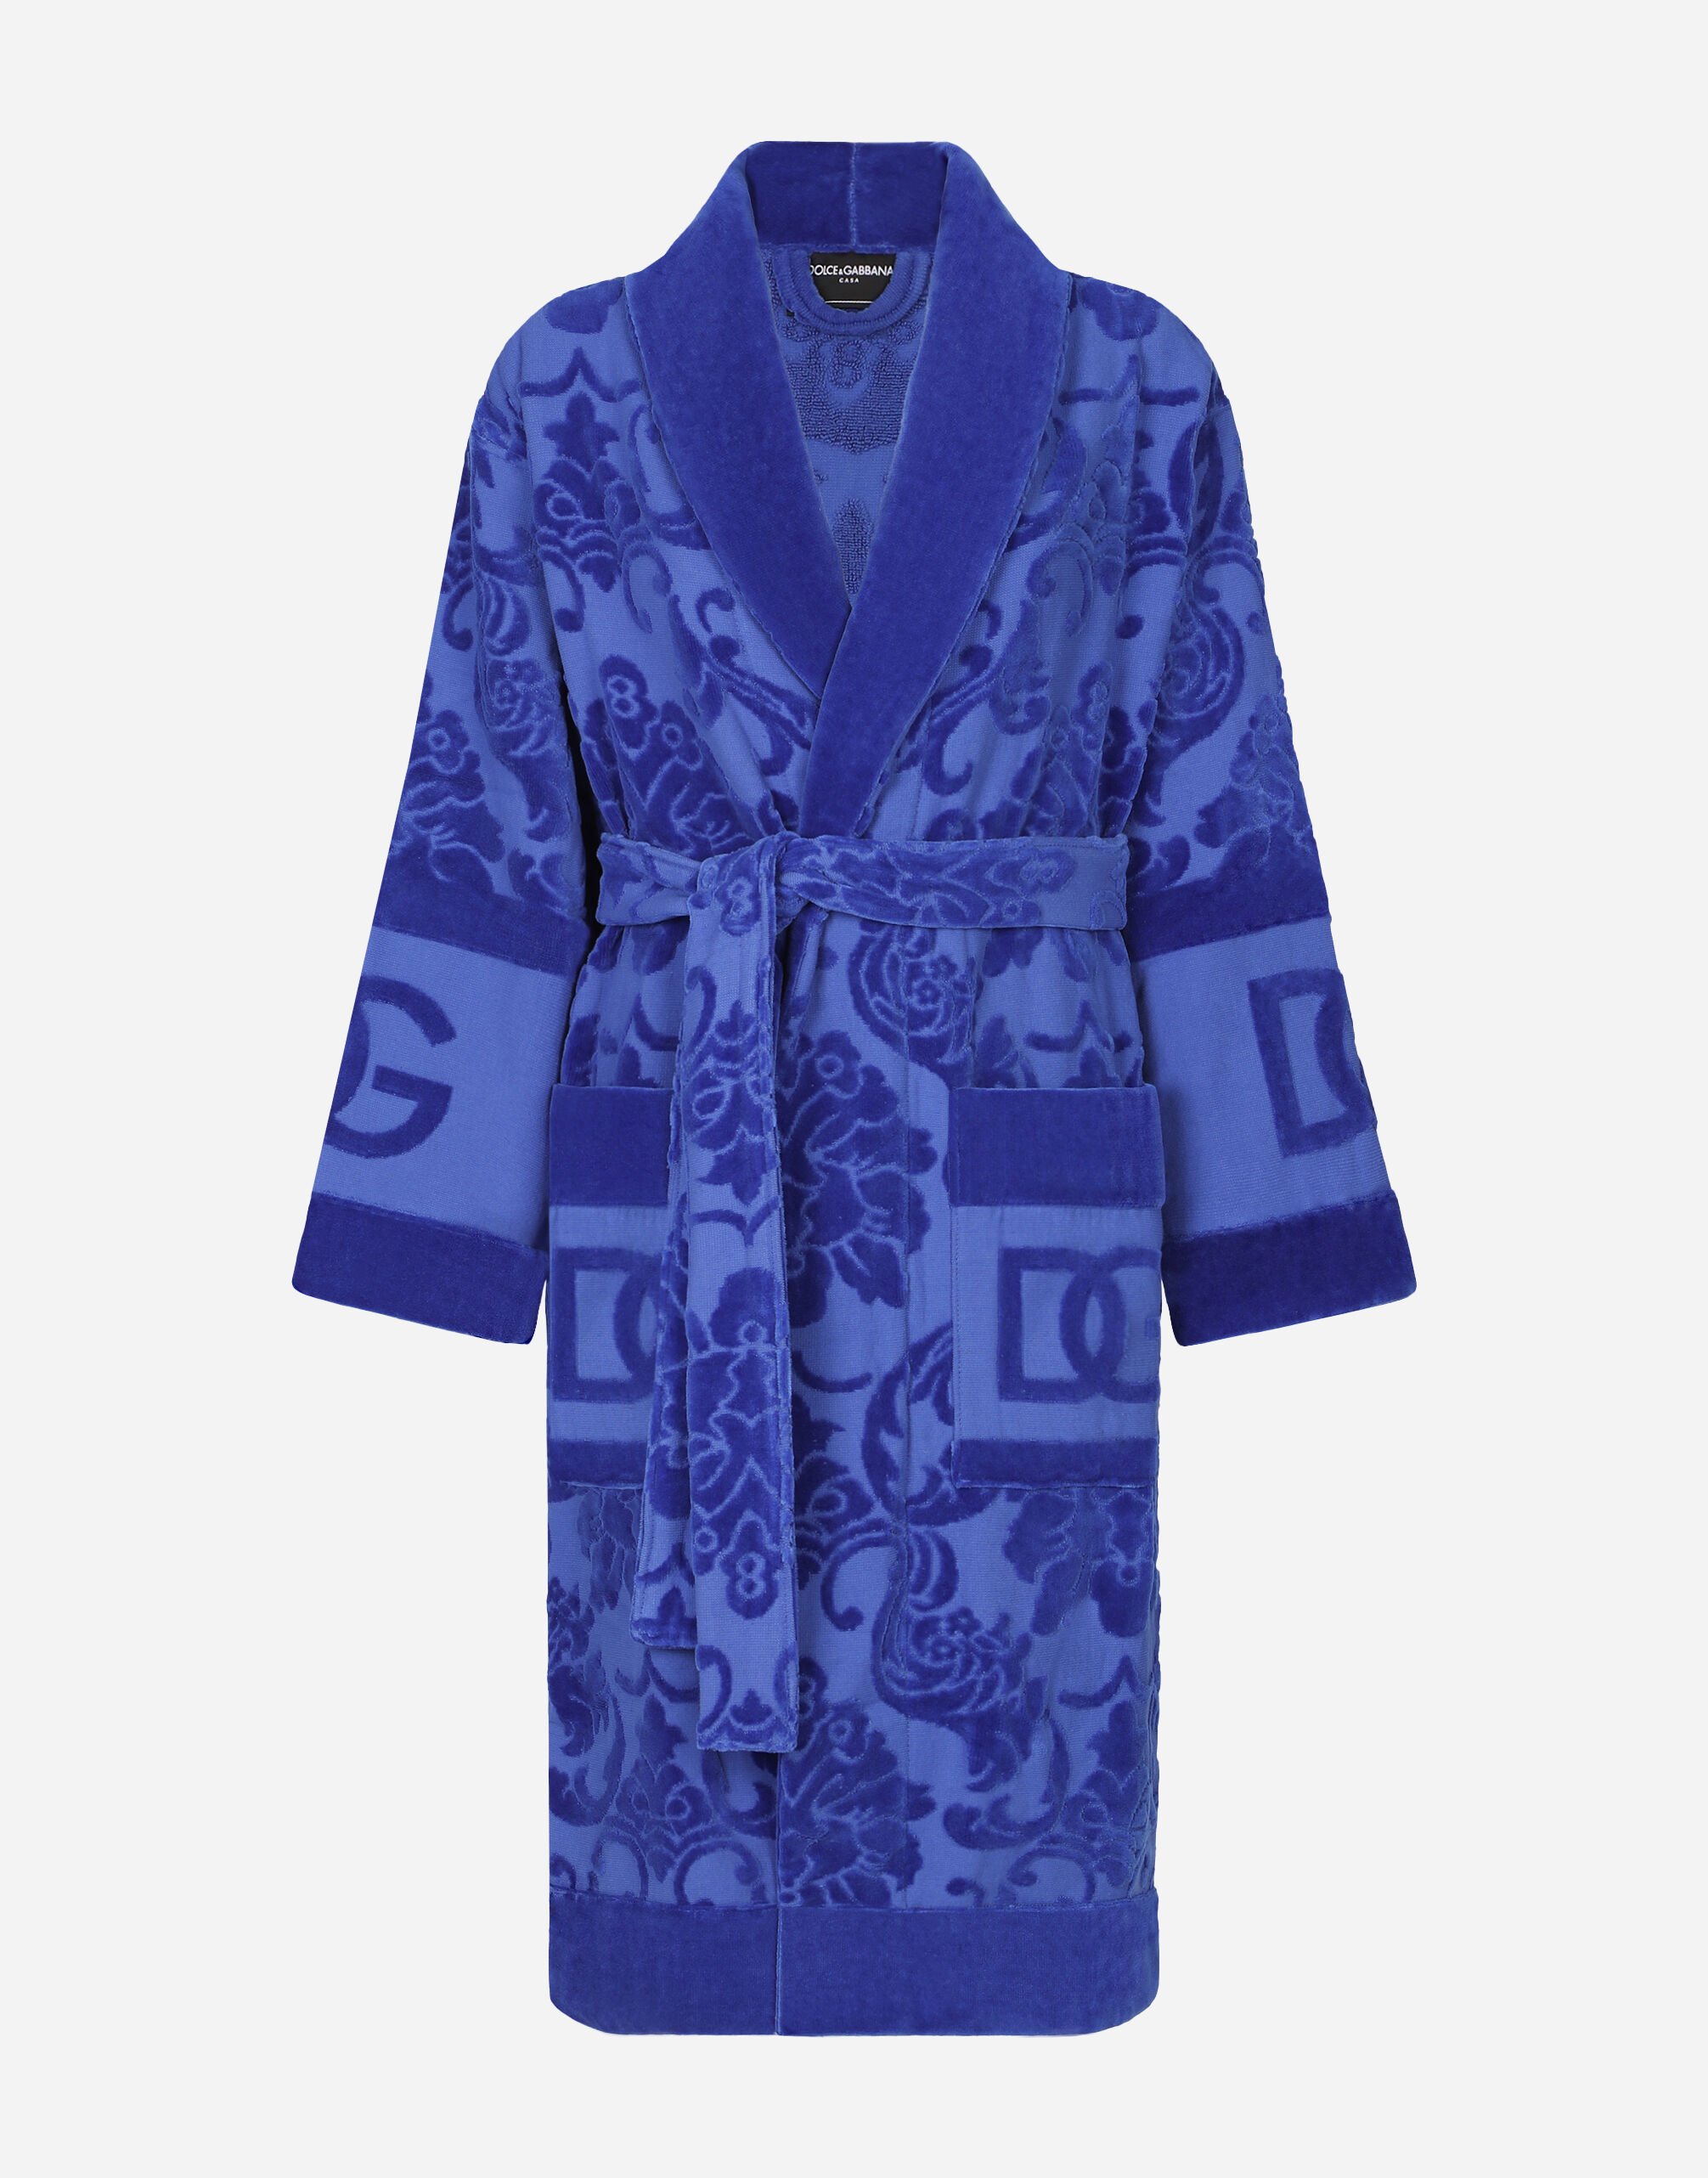 Dolce & Gabbana Bath Robe in Terry Cotton Jacquard Multicolor TCF019TCAGB